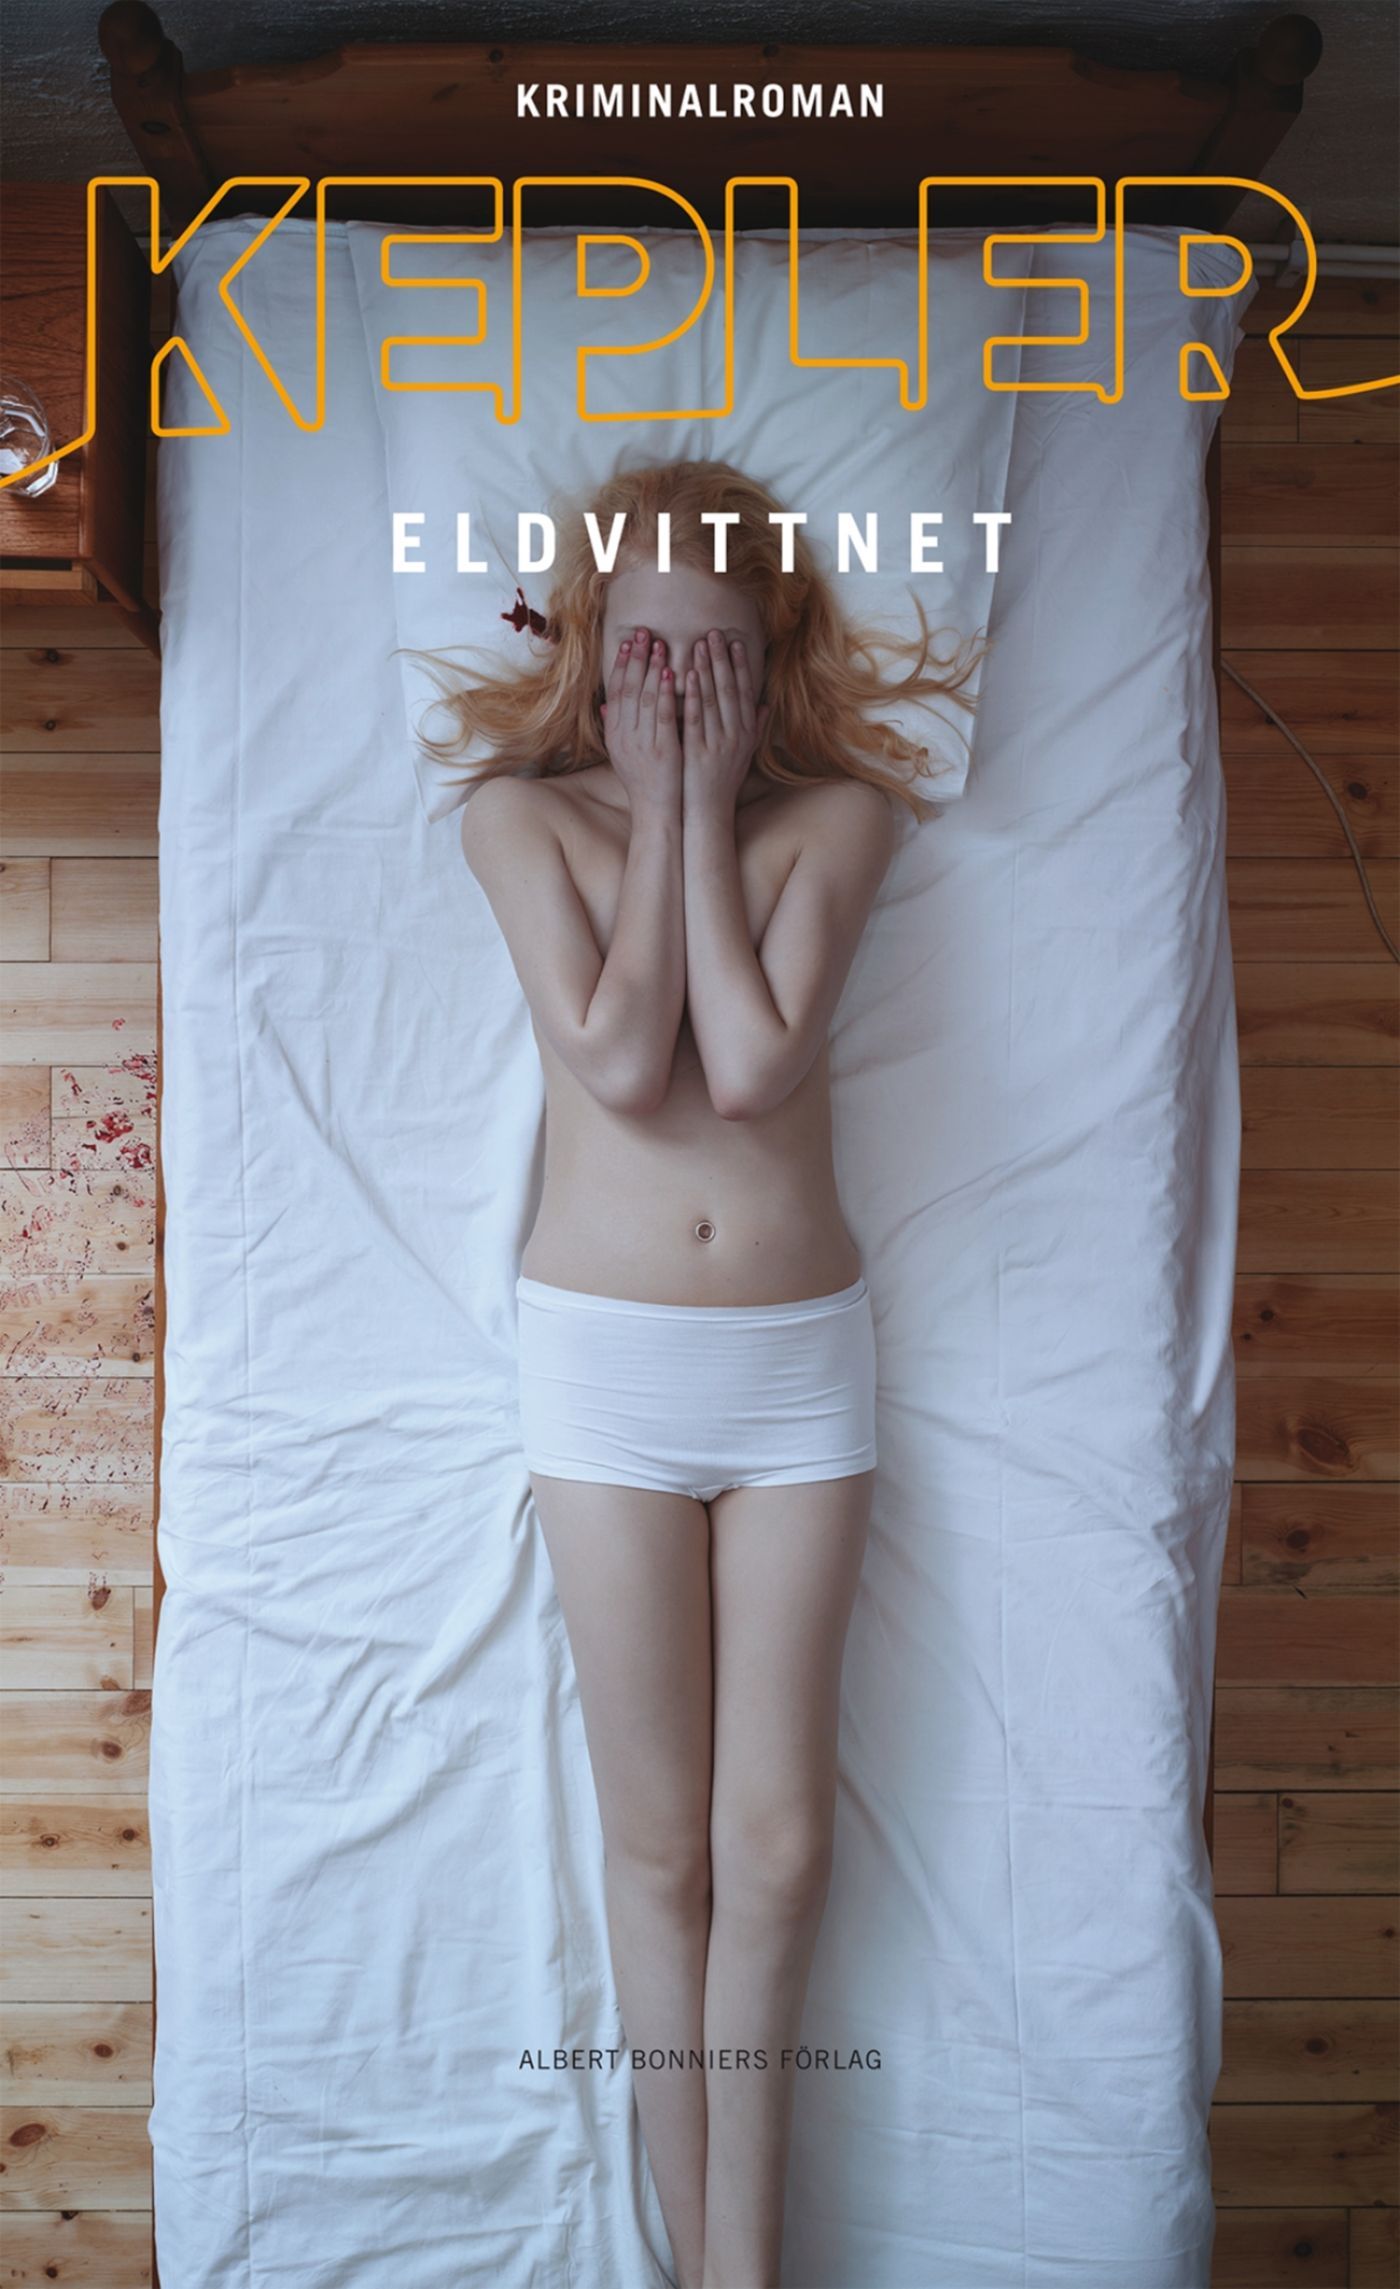 Eldvittnet, eBook by Lars Kepler